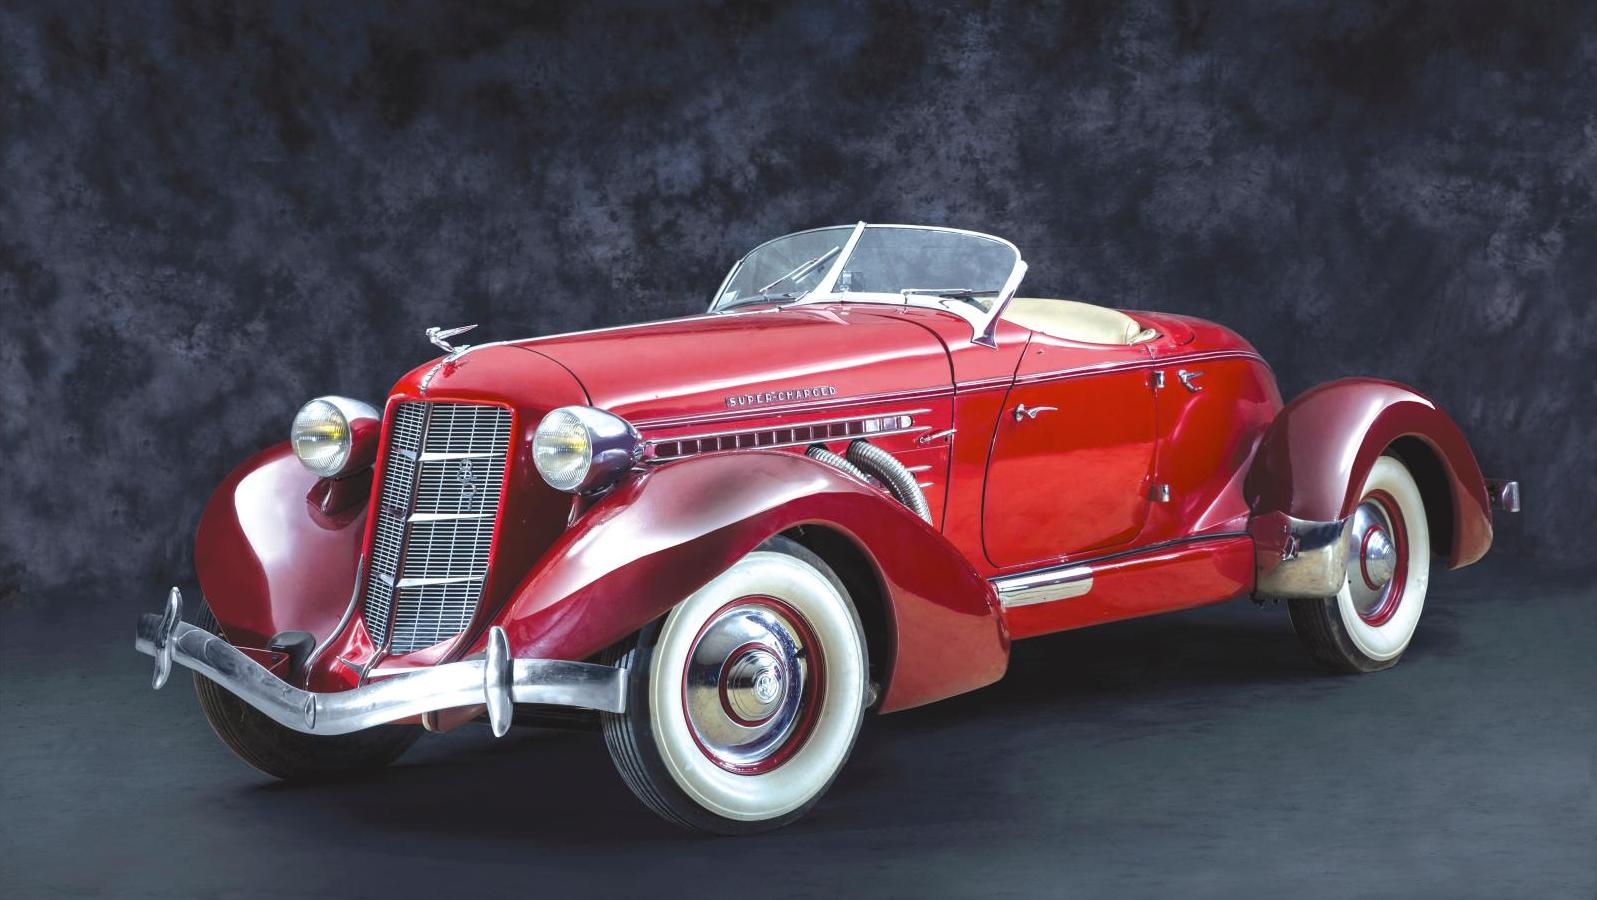 1935, Auburn 851 speedster supercharged, châssis n° 33 551 E, moteur n° GH 2950.... L’Auburn 851, une voiture art déco